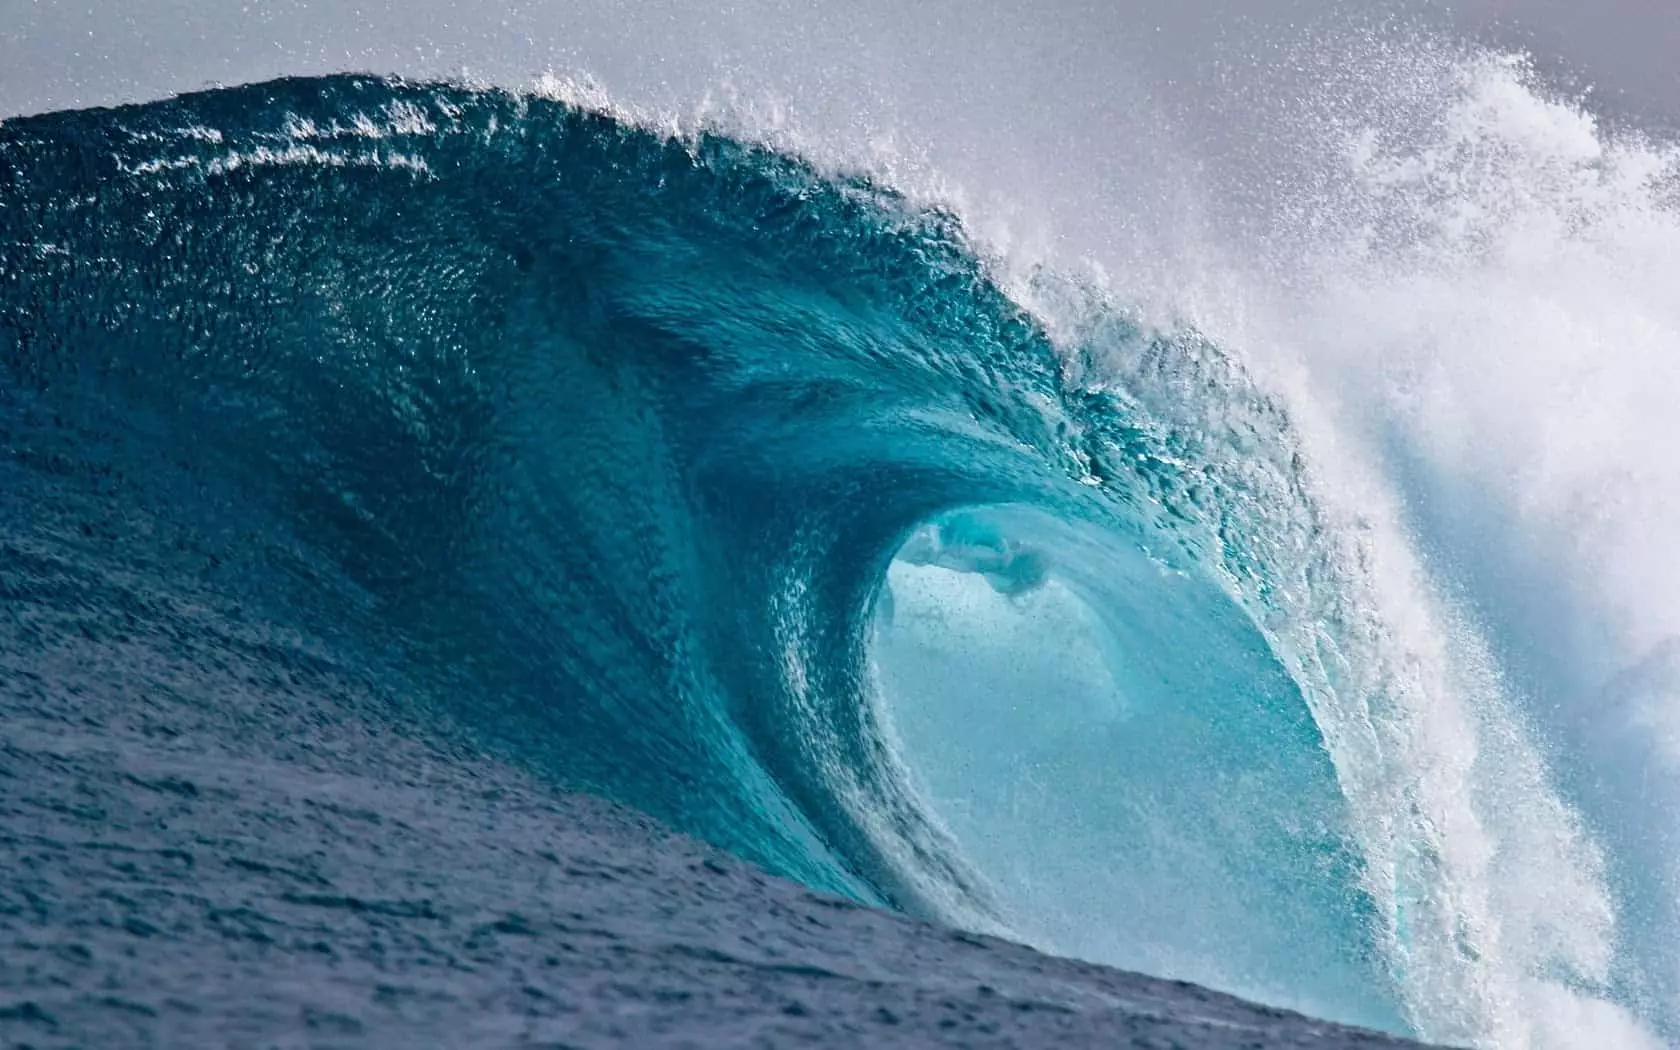 Large wave